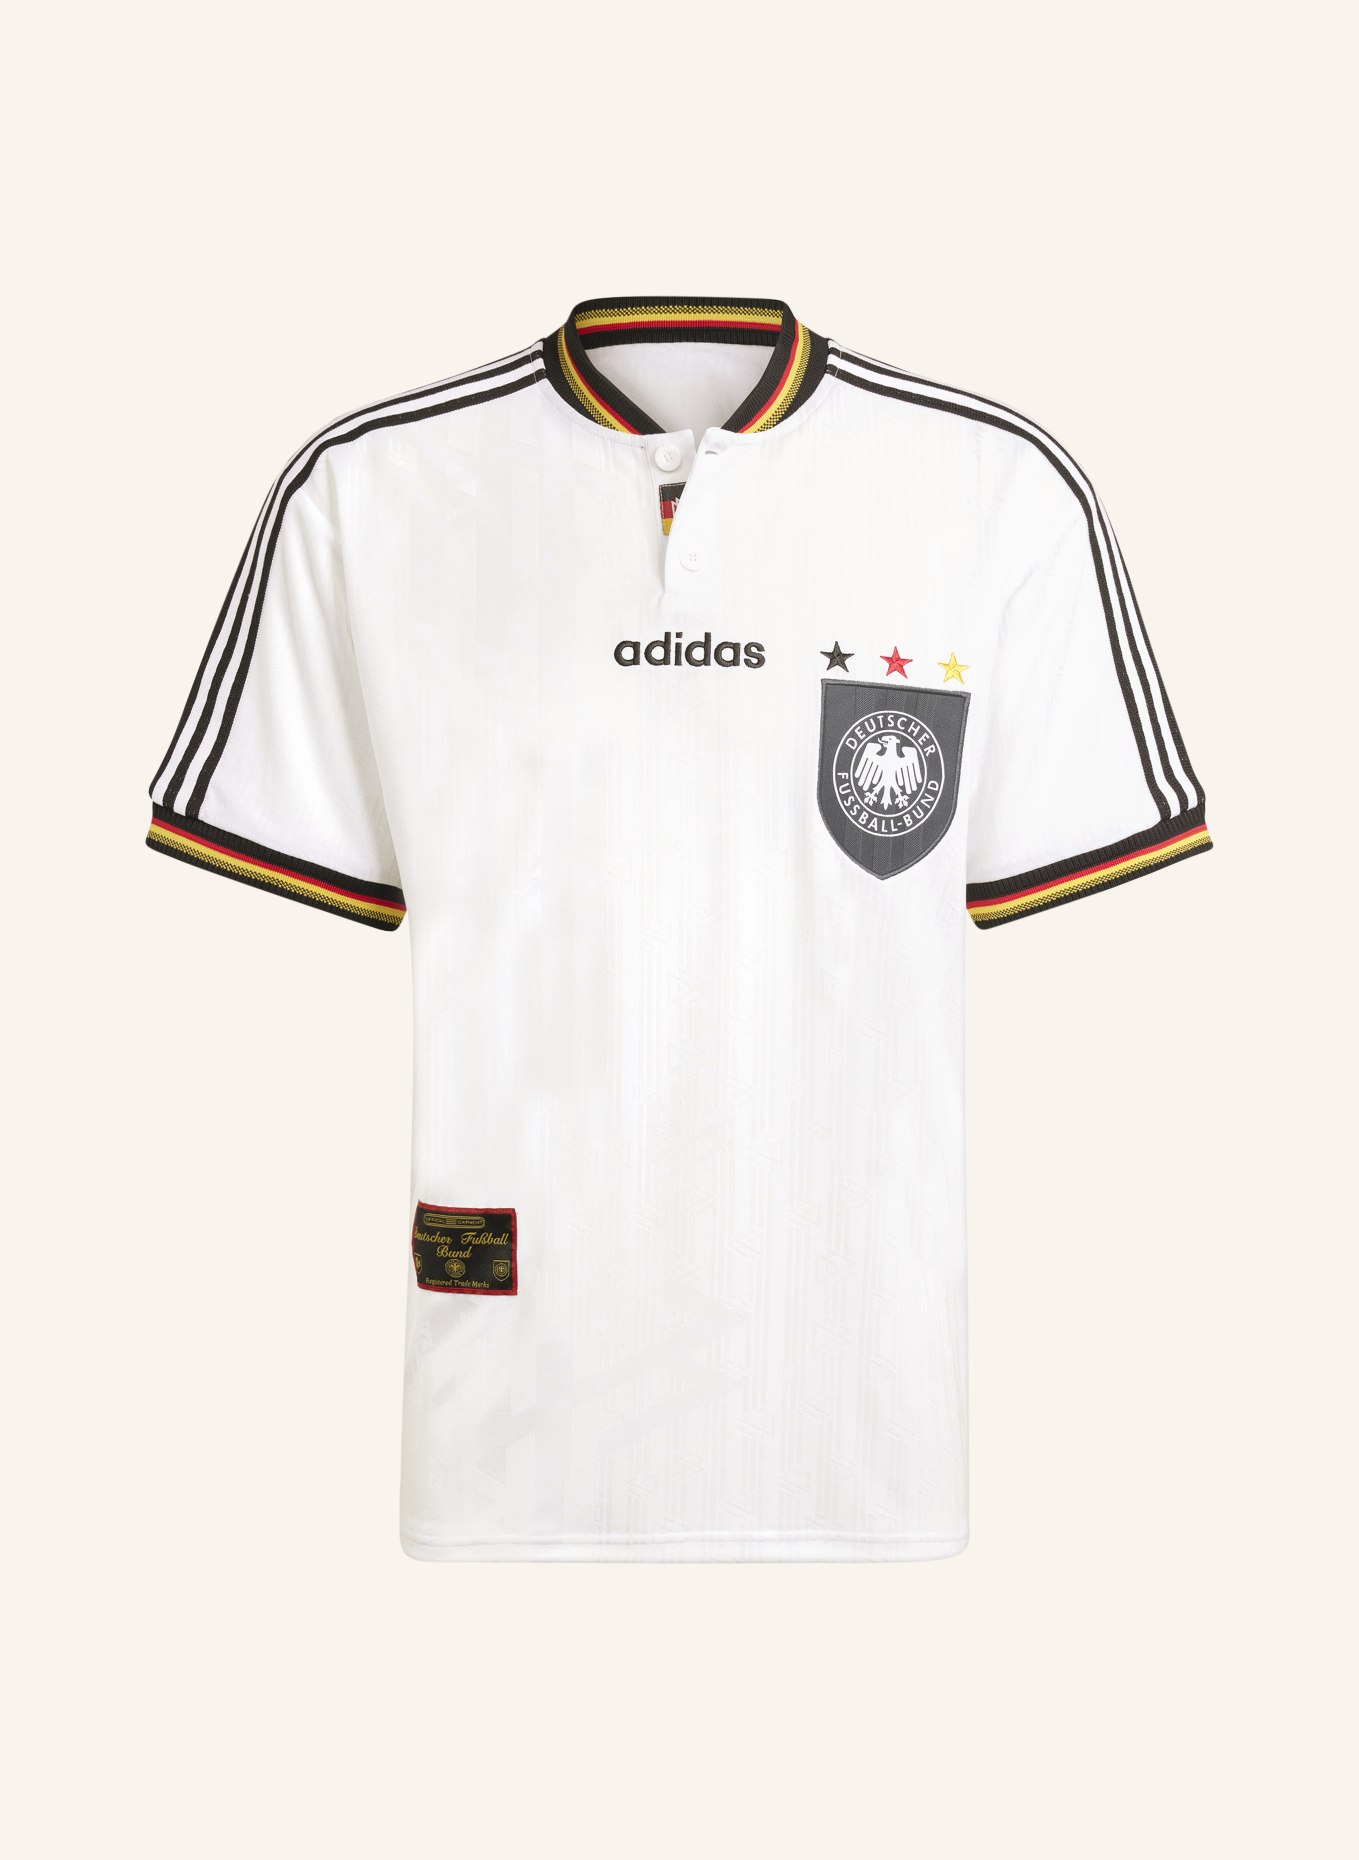 adidas Originals Home jersey DEUTSCHLAND 1996, Color: WHITE (Image 1)